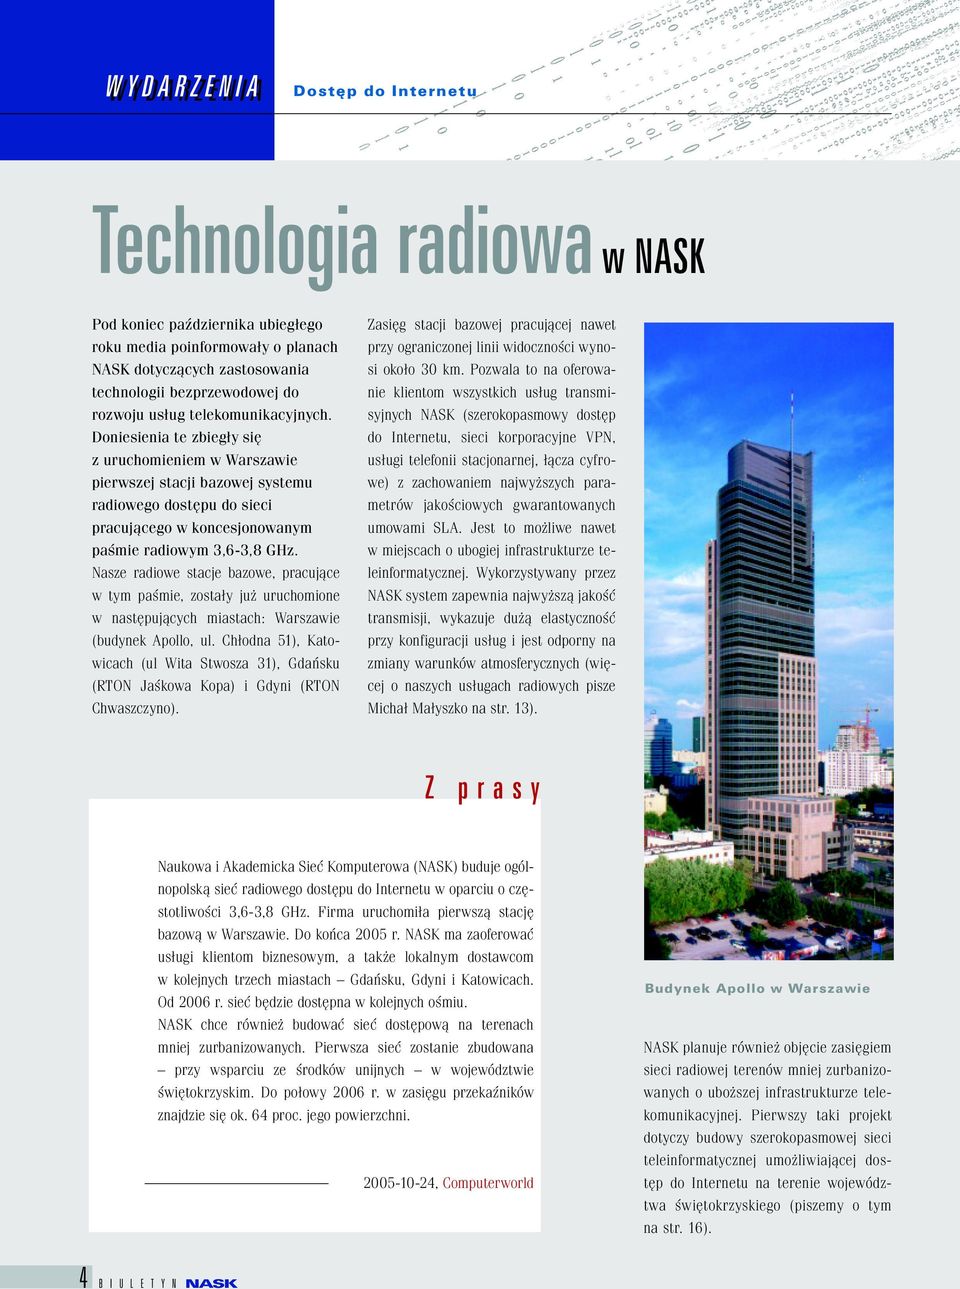 Doniesienia te zbiegły się z uruchomieniem w Warszawie pierwszej stacji bazowej systemu radiowego dostępu do sieci pracującego w koncesjonowanym paśmie radiowym 3,6-3,8 GHz.